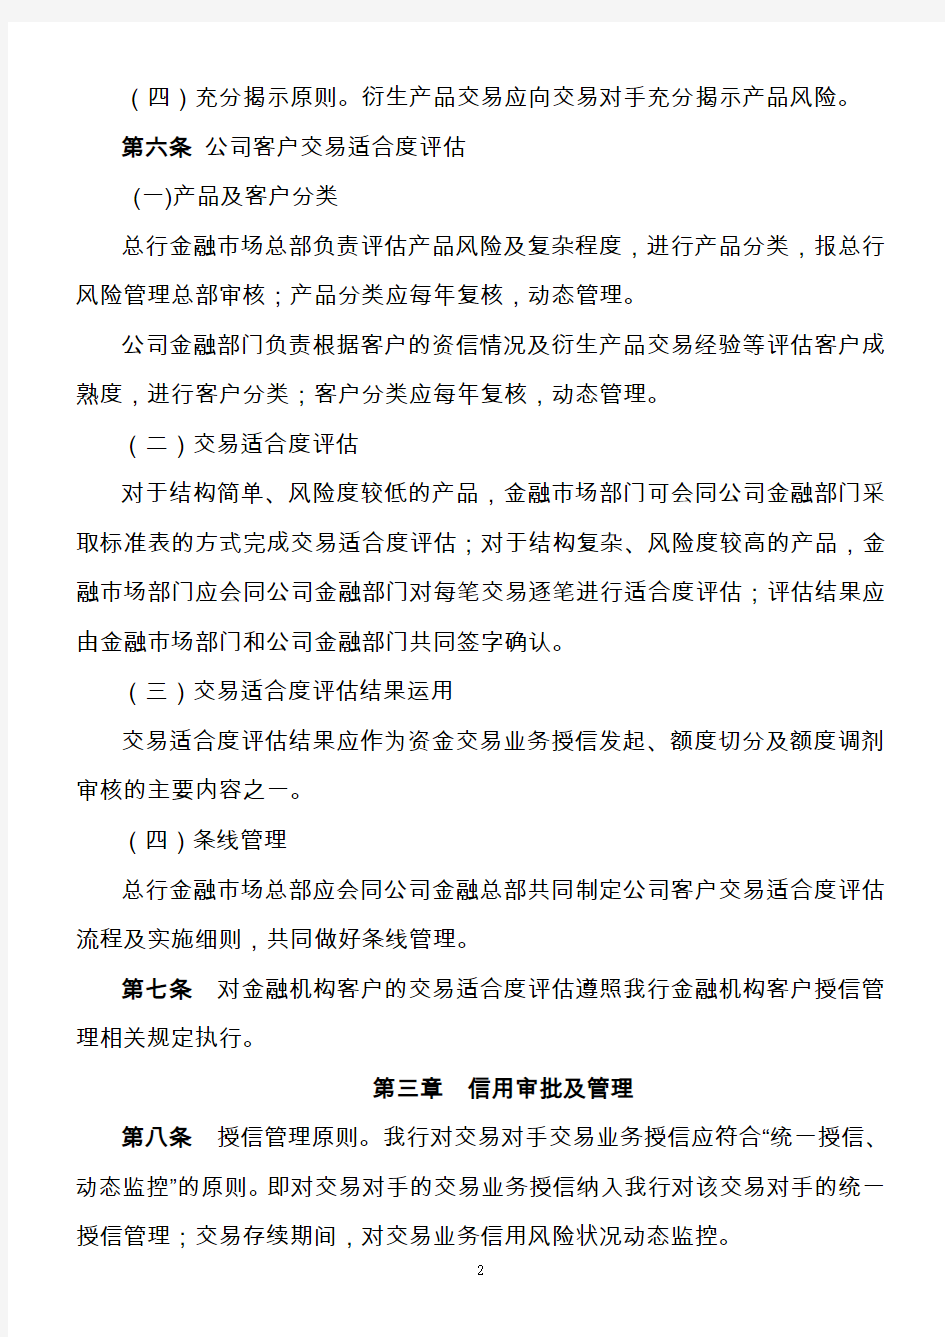 资金业务交易对手授信风险管理办法(2011年版)(中文版)